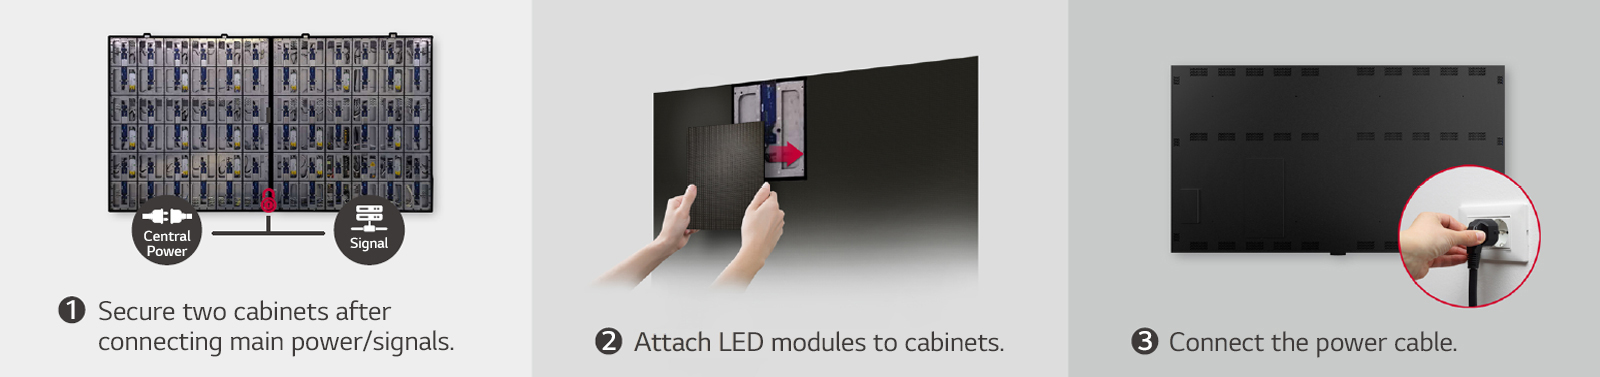 Esto consiste en un total de imágenes de 3 pasos para asegurar dos gabinetes, conectar módulos LED y conectar el cable de alimentación.